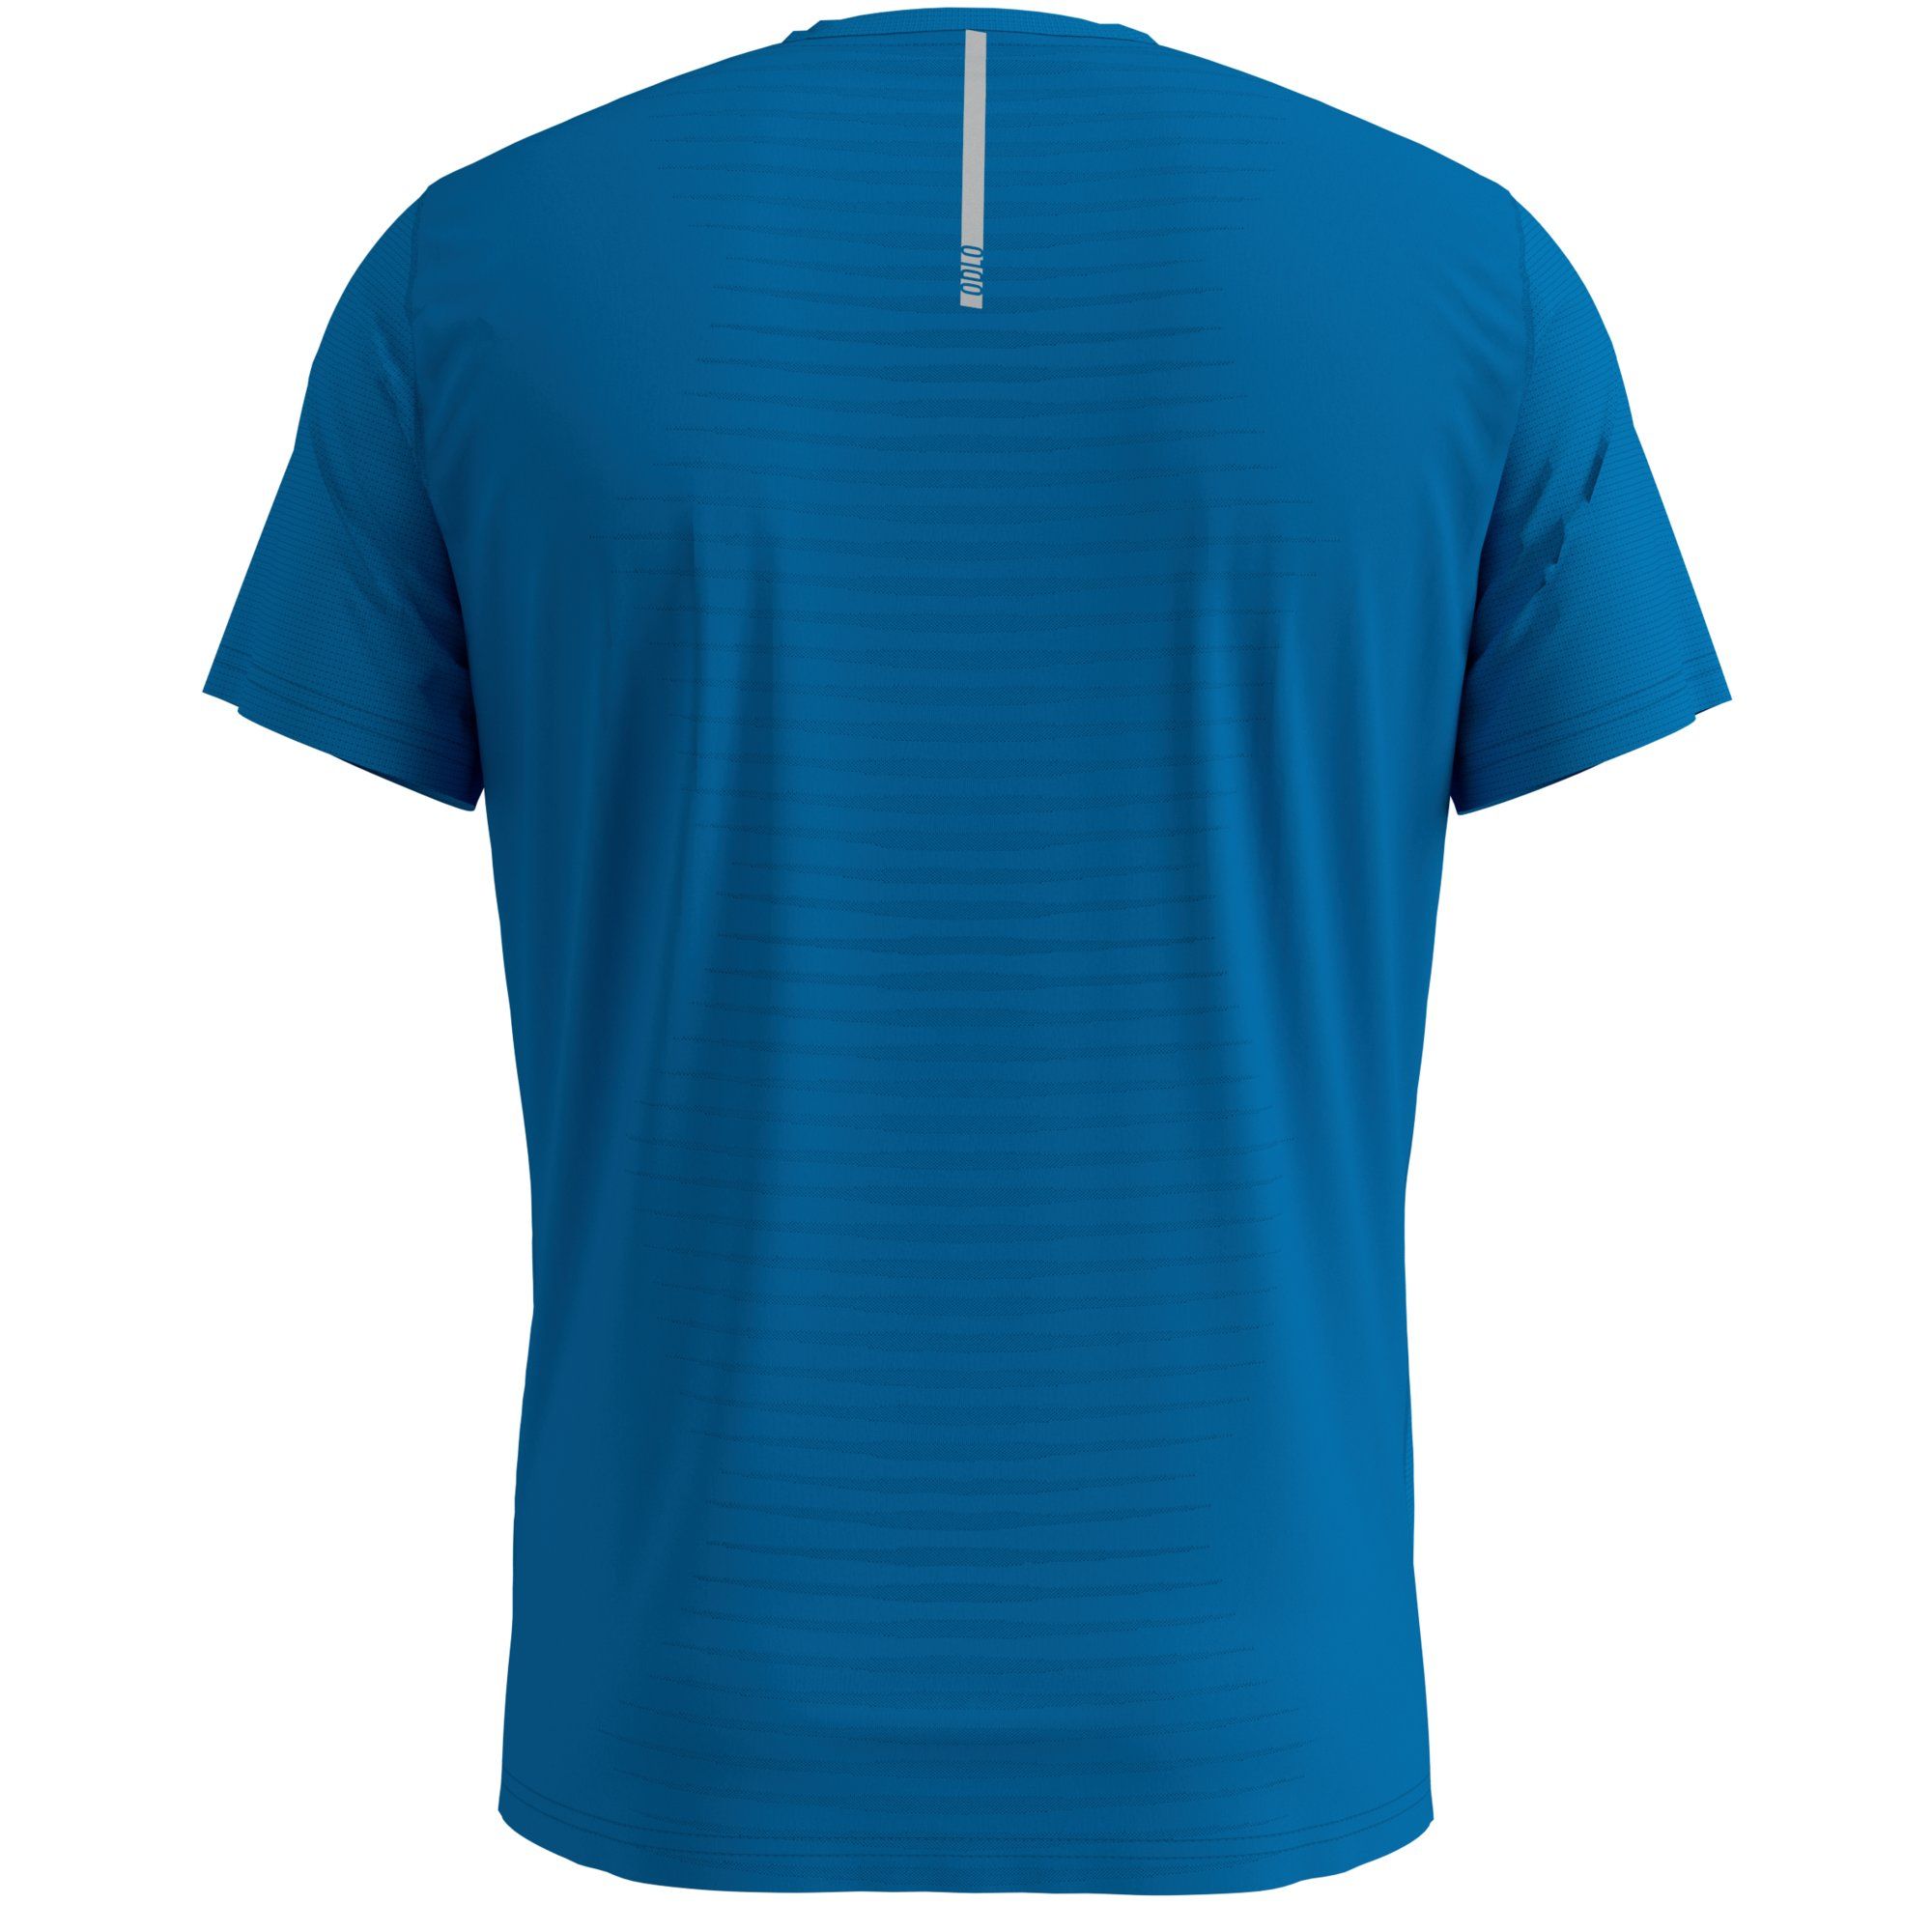 T-shirt MC Zeroweight - Blue aster